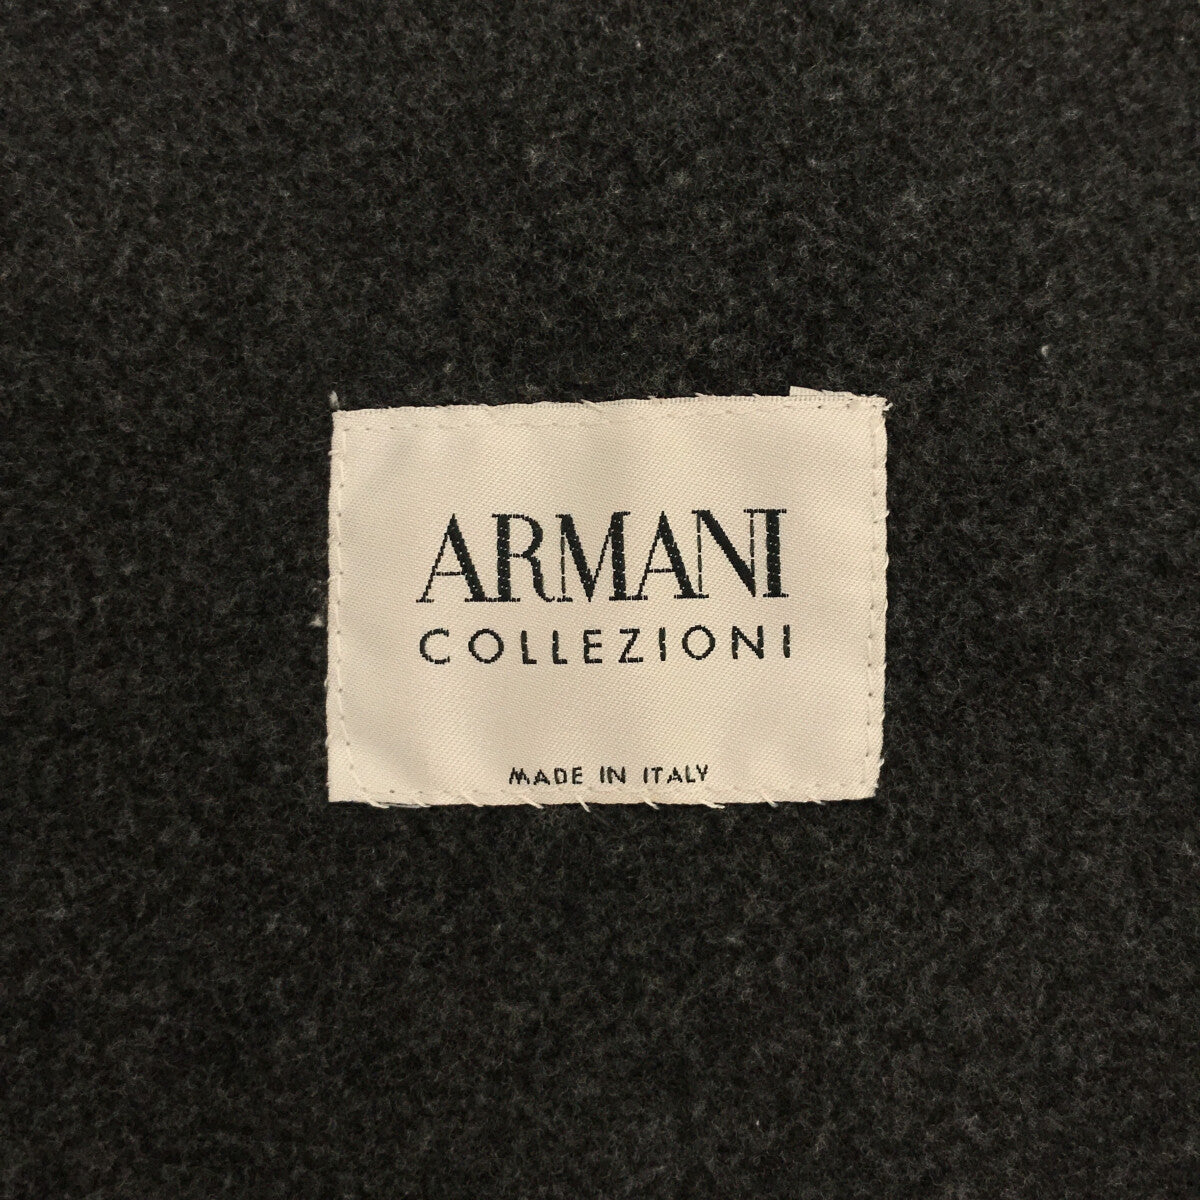 GIORGIO ARMANI / ジョルジオアルマーニ | ラムレザー ボンディング ハイネック ジップアップコート | 50 | ブラウン | メンズ